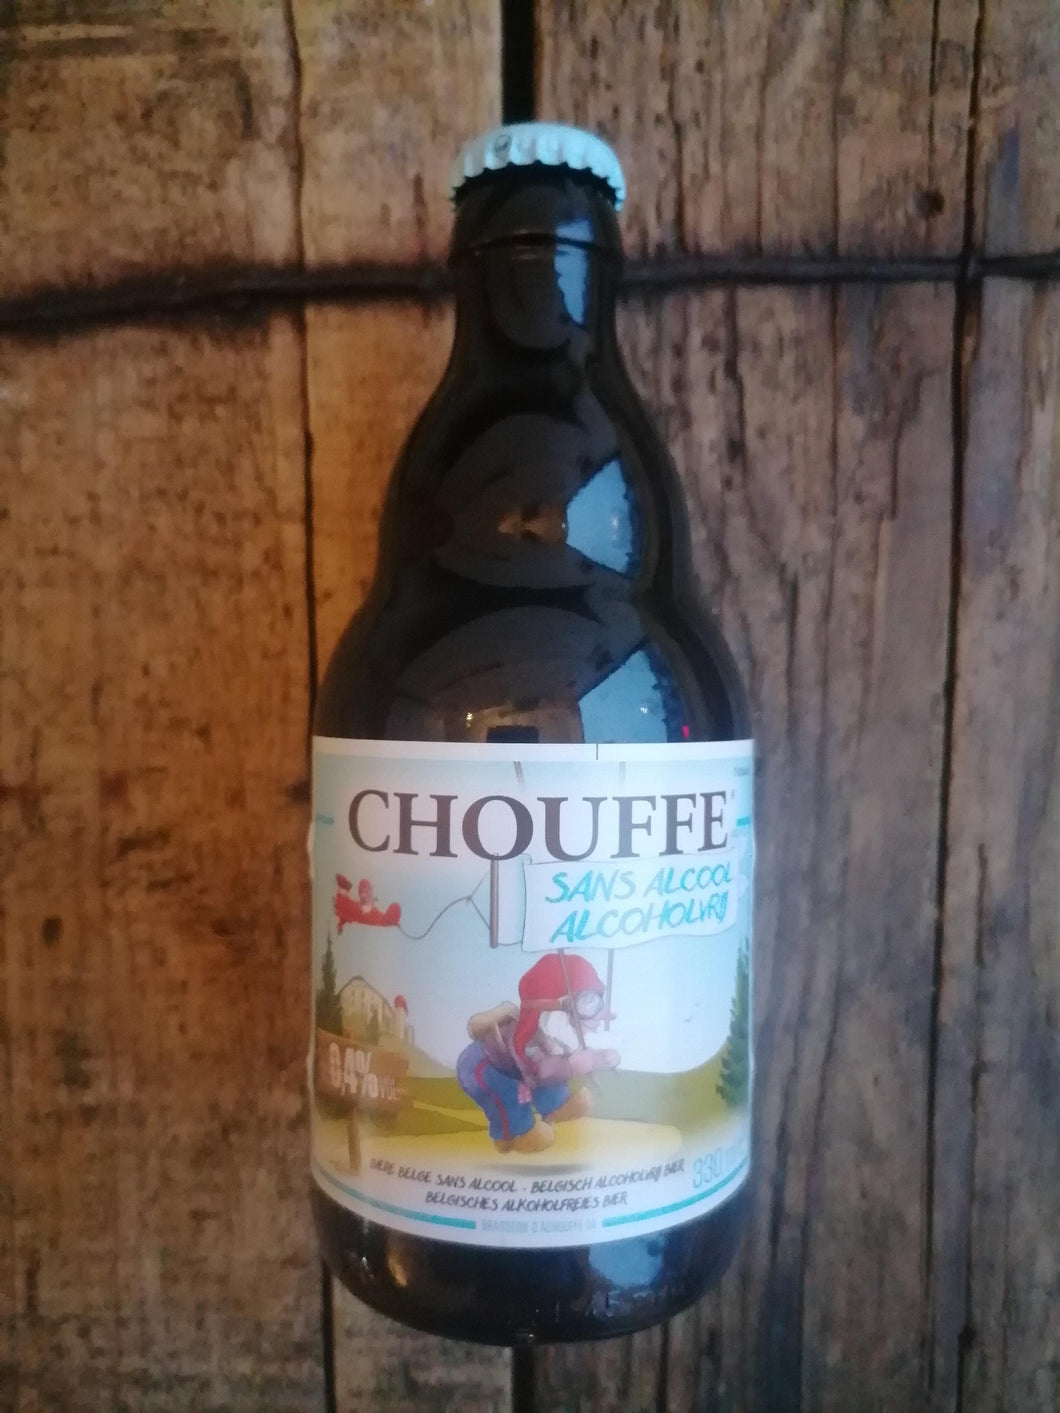 Chouffe Sans Alcool 0.4% (330ml bottle)